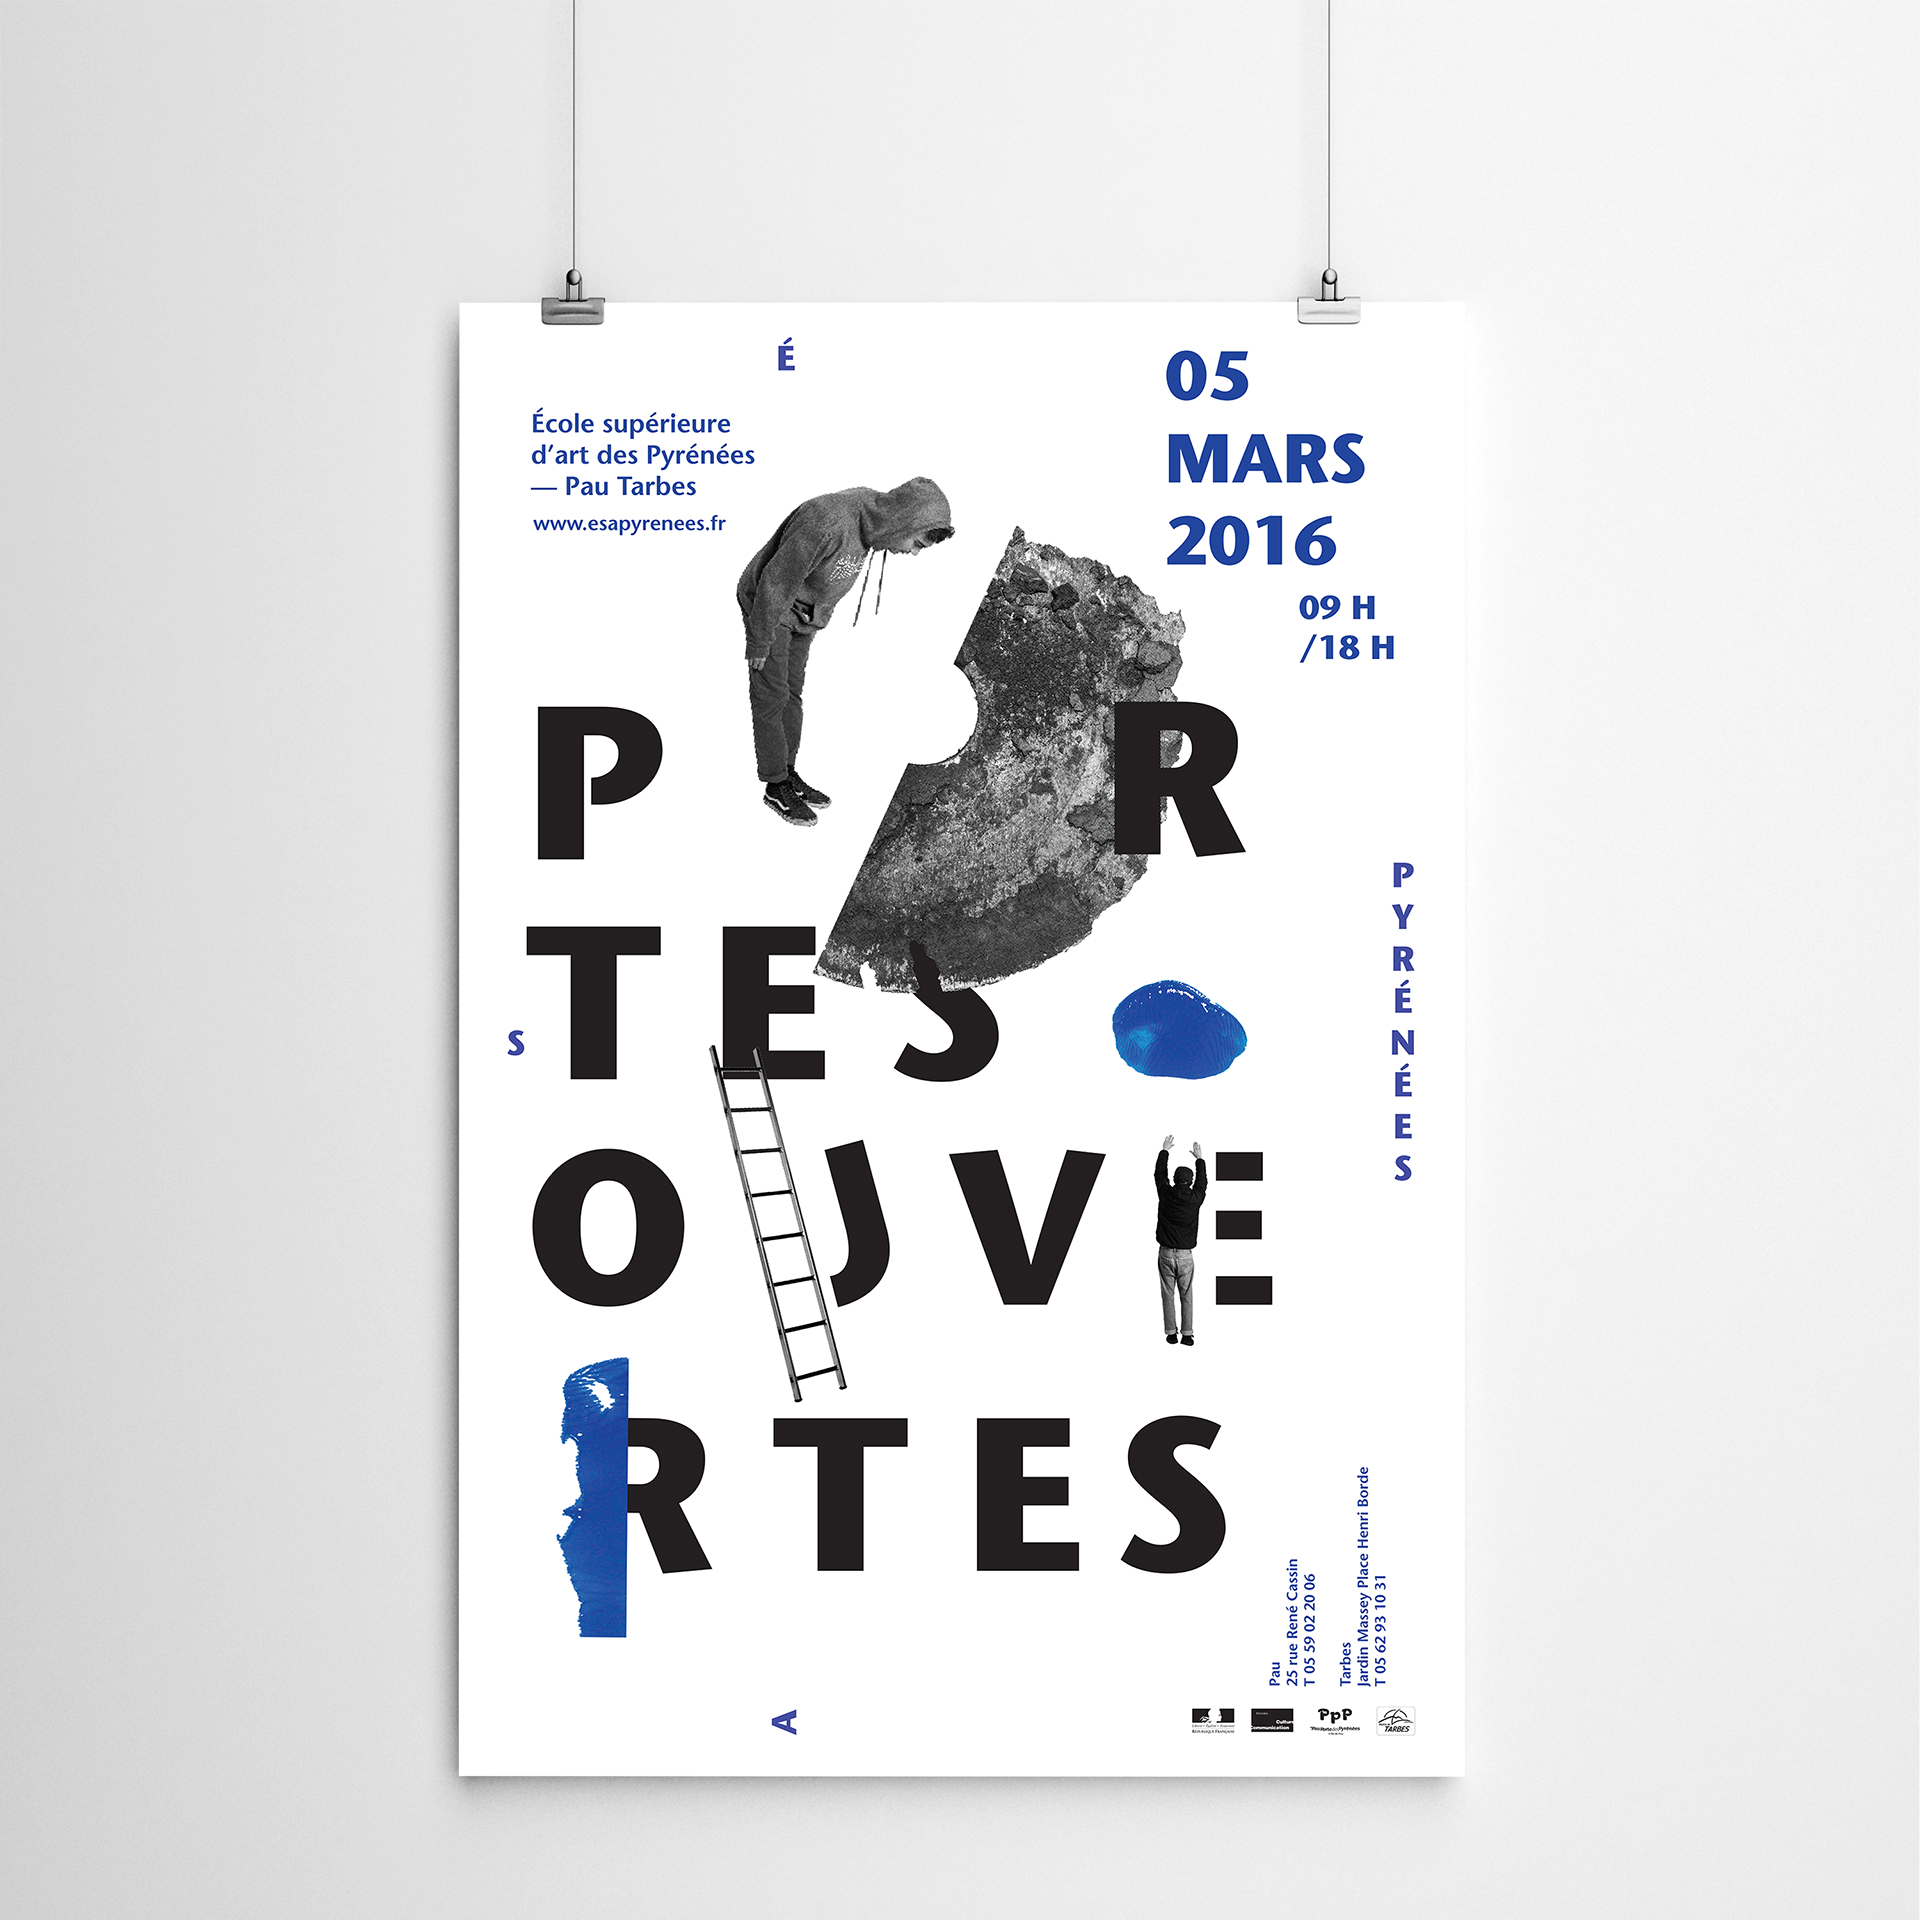 Portes ouvertes ESA Pyrénées, affiche, image 1, 2016, Sybille Clemente designer graphique.